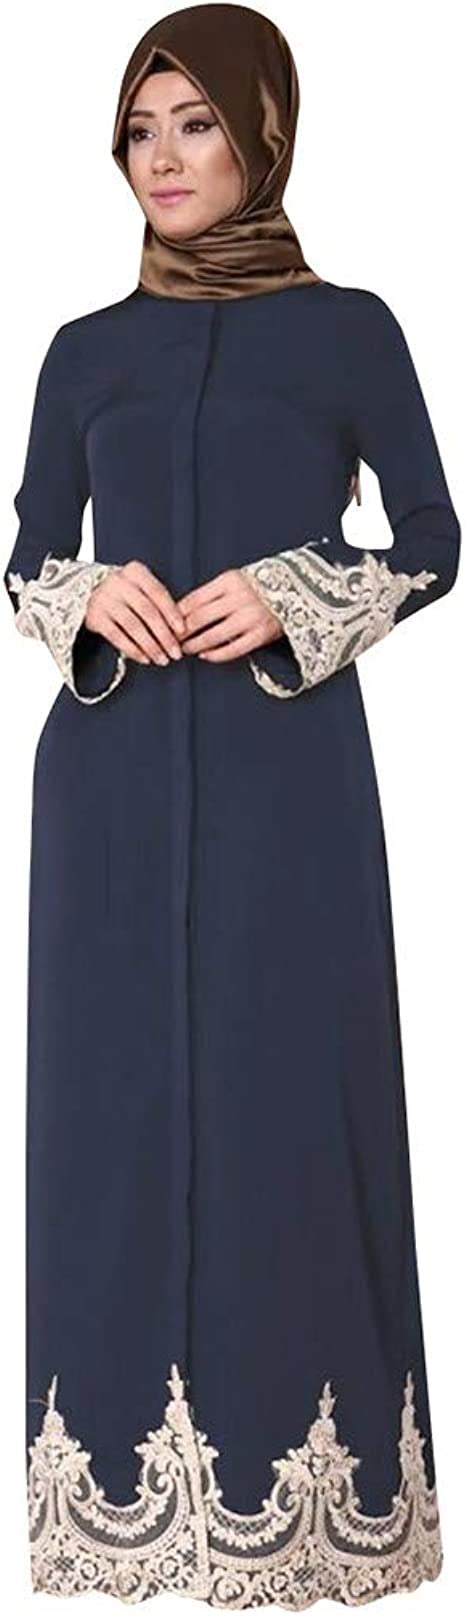 BakeLIN Islamische Kleidung Spitze Frauen Maxikleid Konservativen Stil Abaya Muslimische Kleider